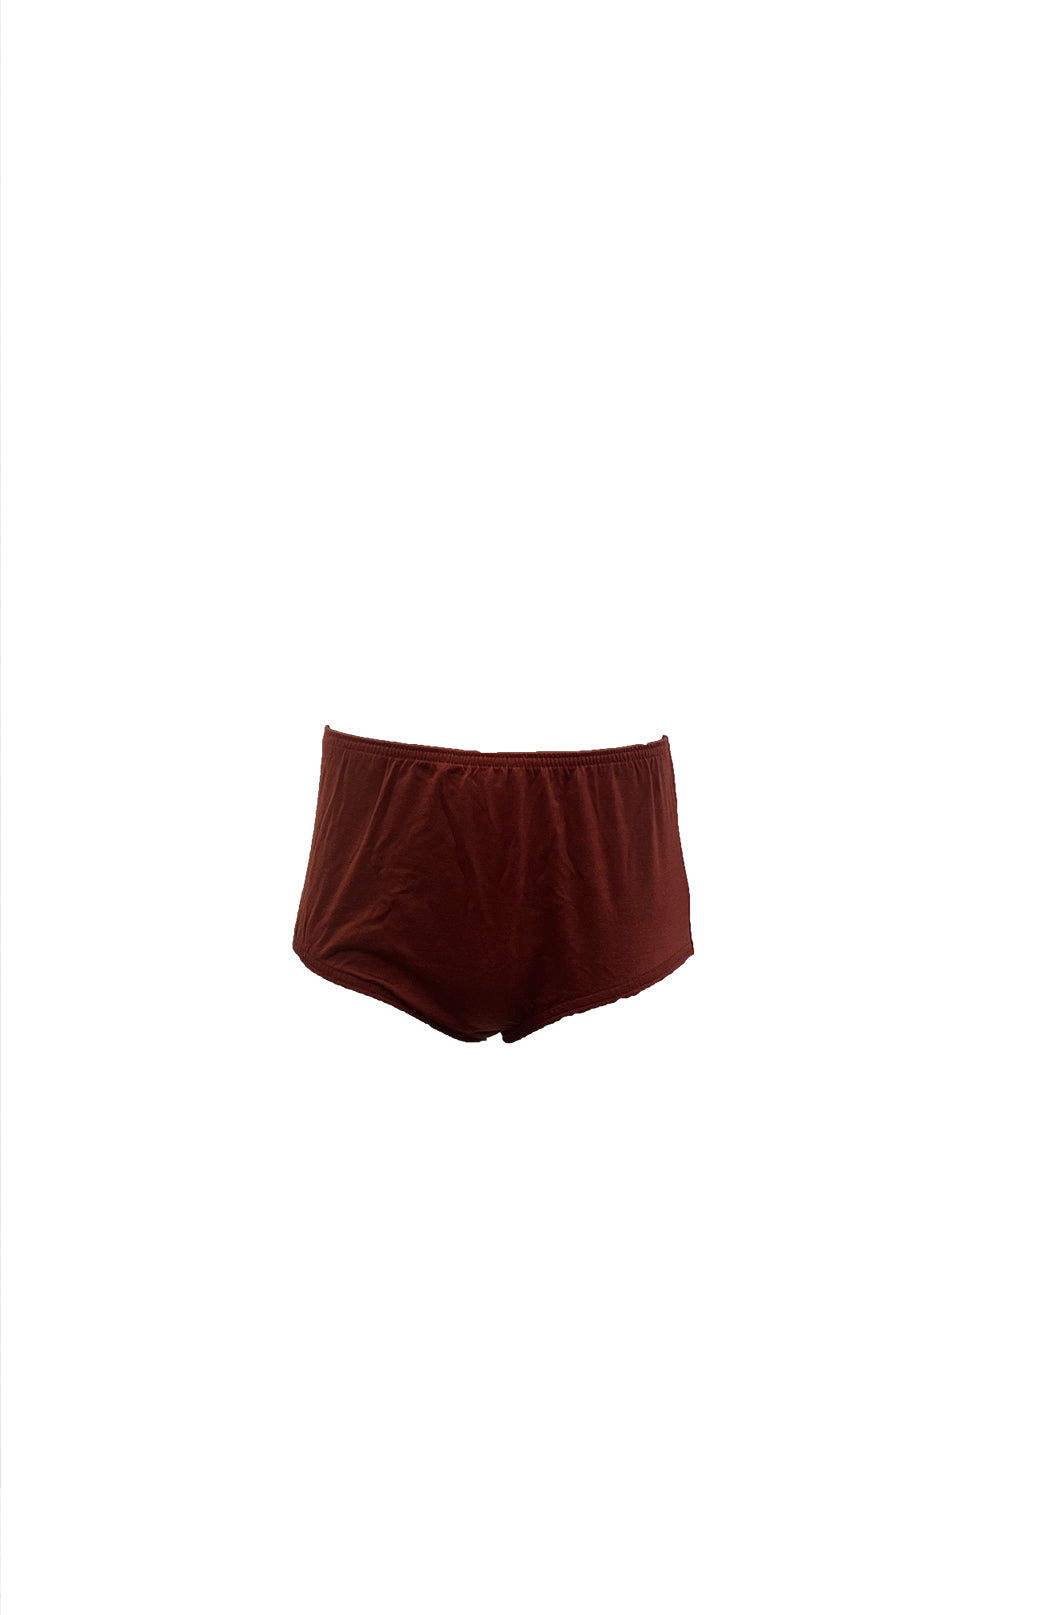 Underwear women: short long pure merinowool warm and sweet